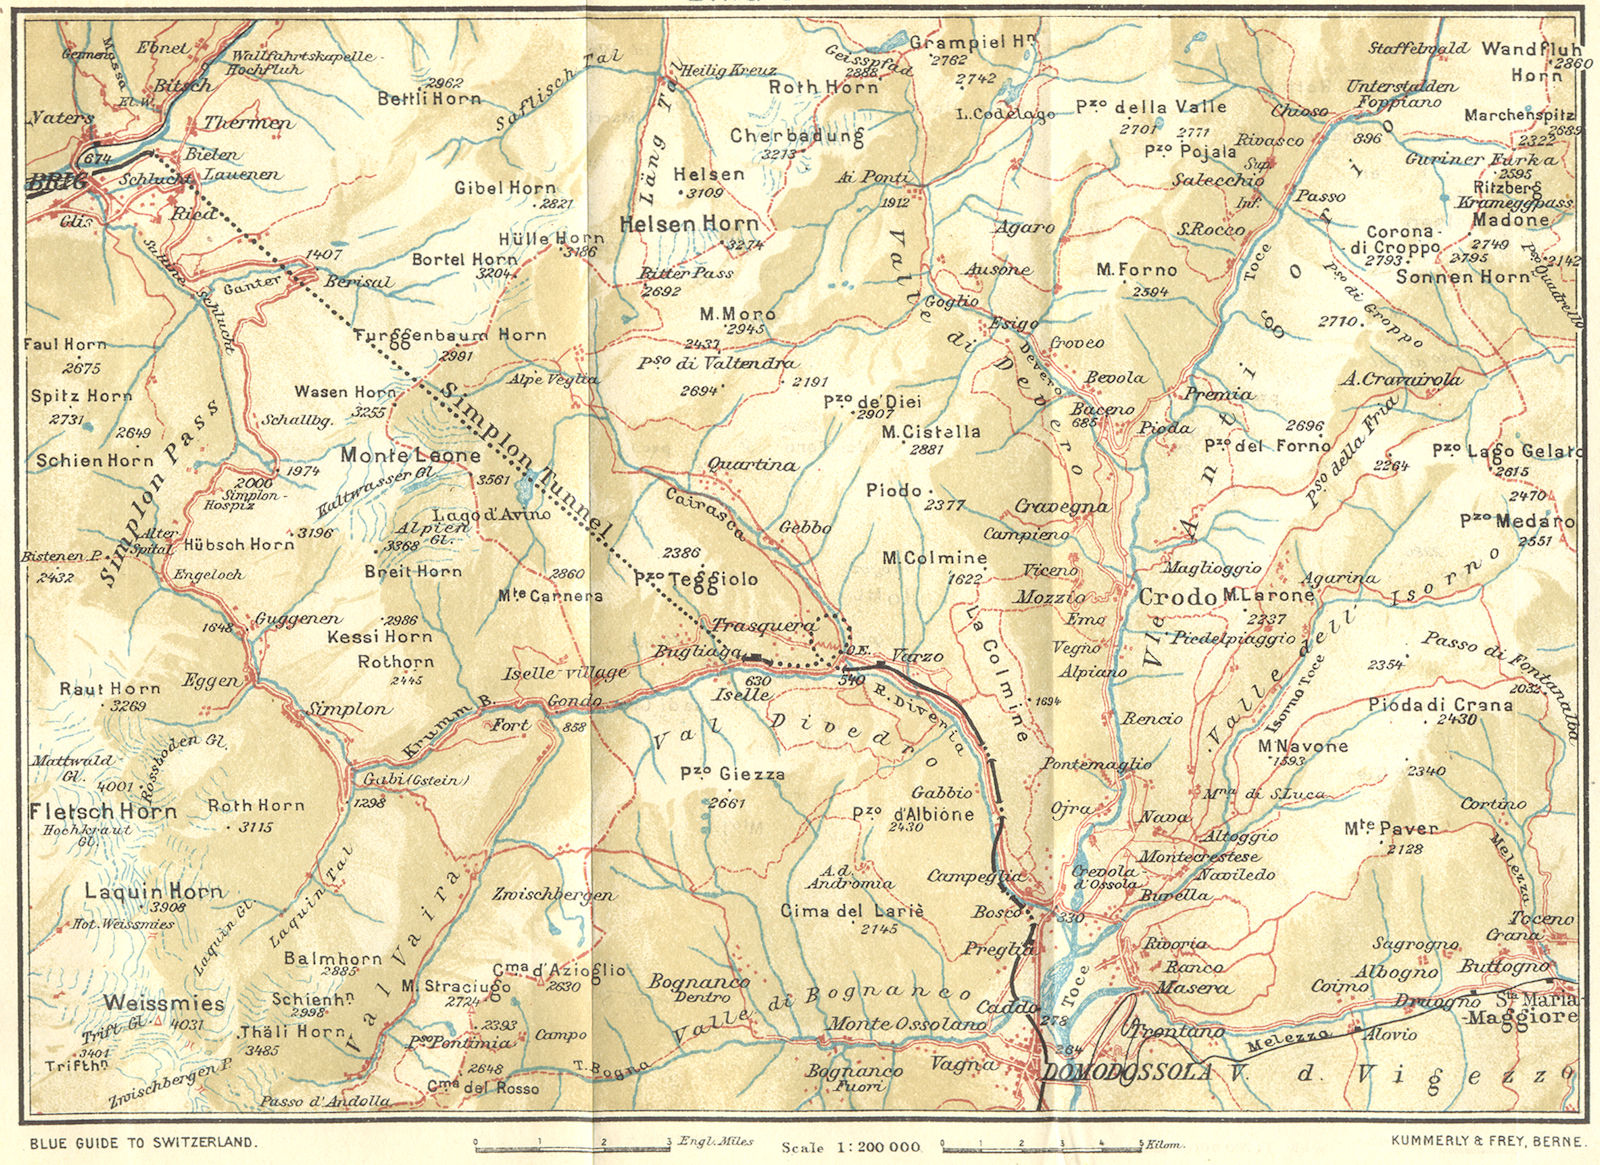 SWITZERLAND. Brig-Simplon 1923 old antique vintage map plan chart